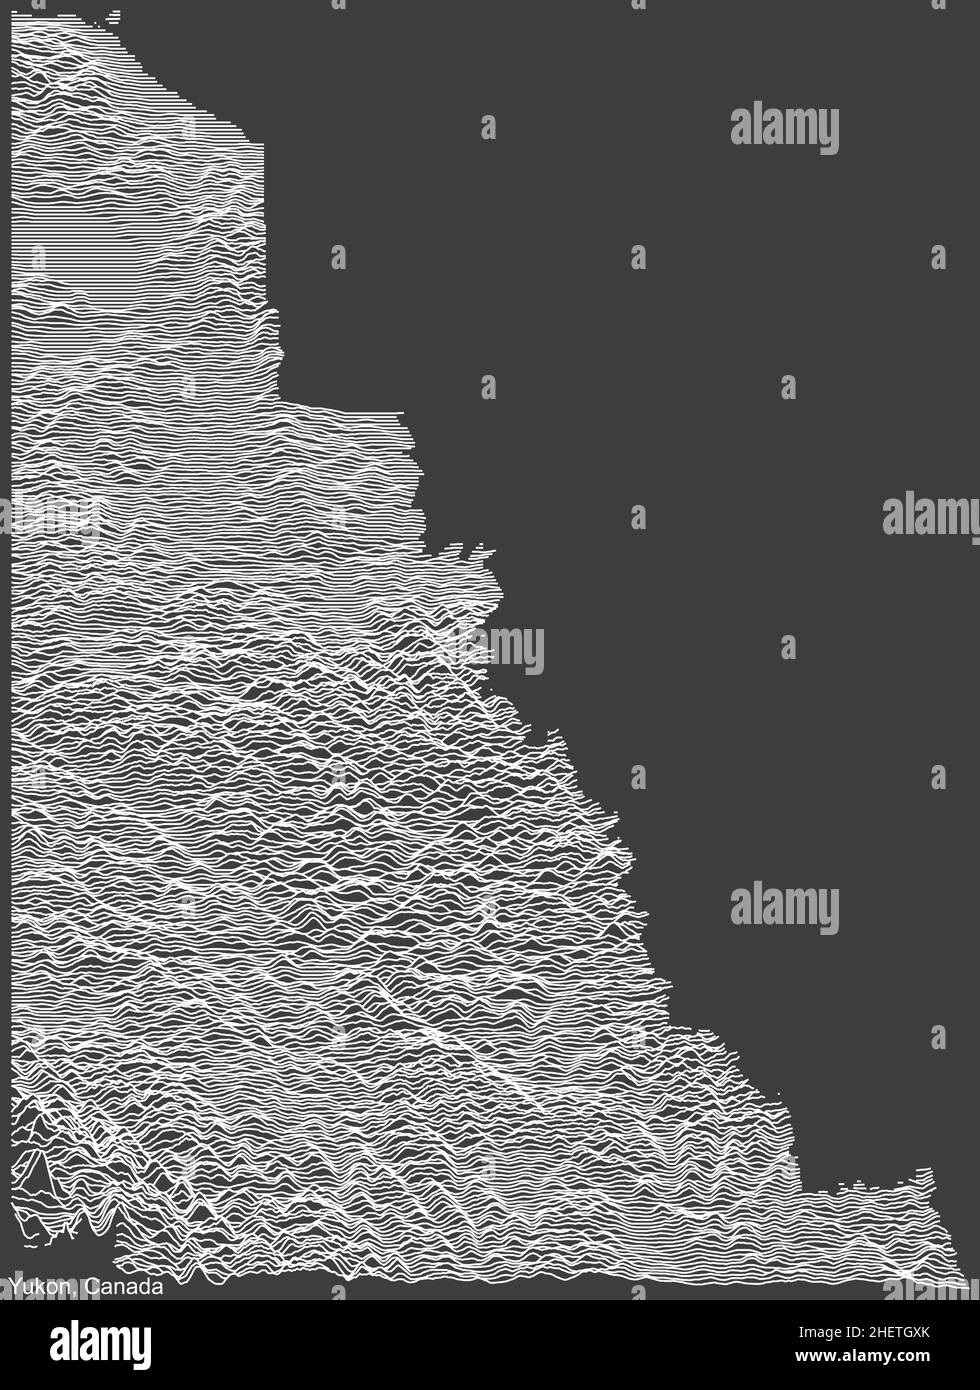 Topographische negative Reliefkarte des kanadischen Territoriums YUKON, KANADA mit weißen Konturlinien auf dunkelgrauem Hintergrund Stock Vektor